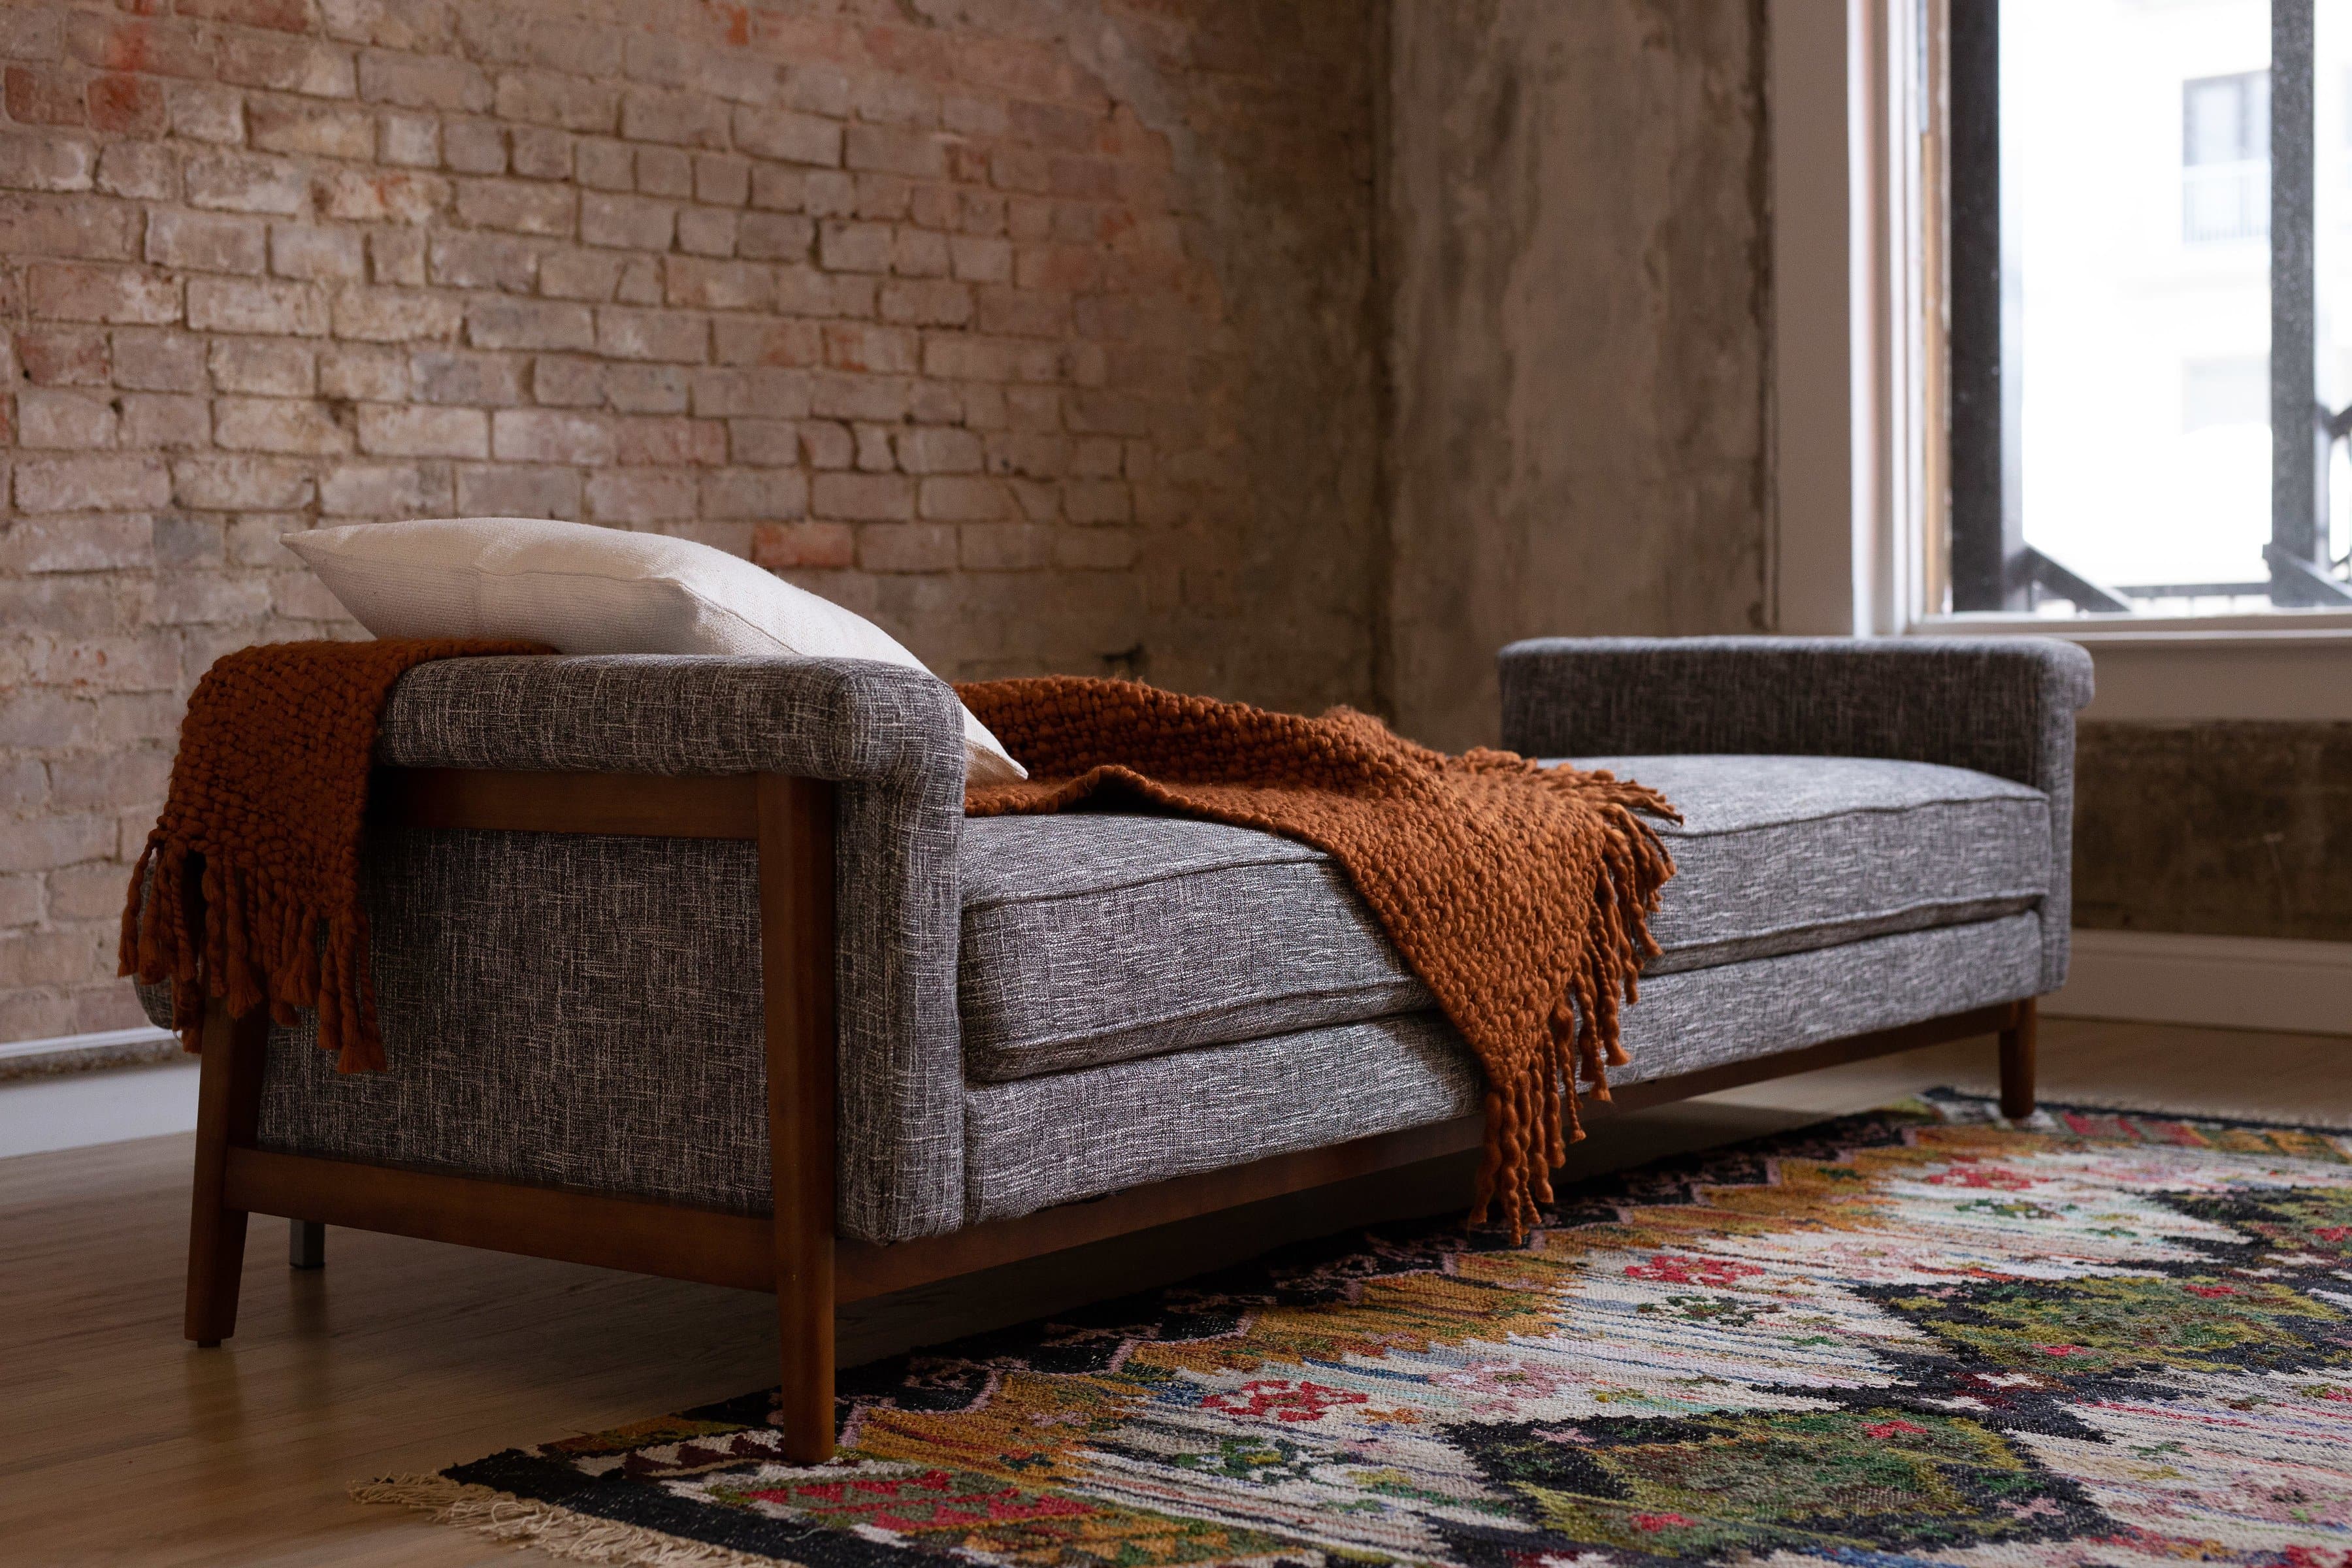 Ashbury Mid Century Modern Futon Sofa